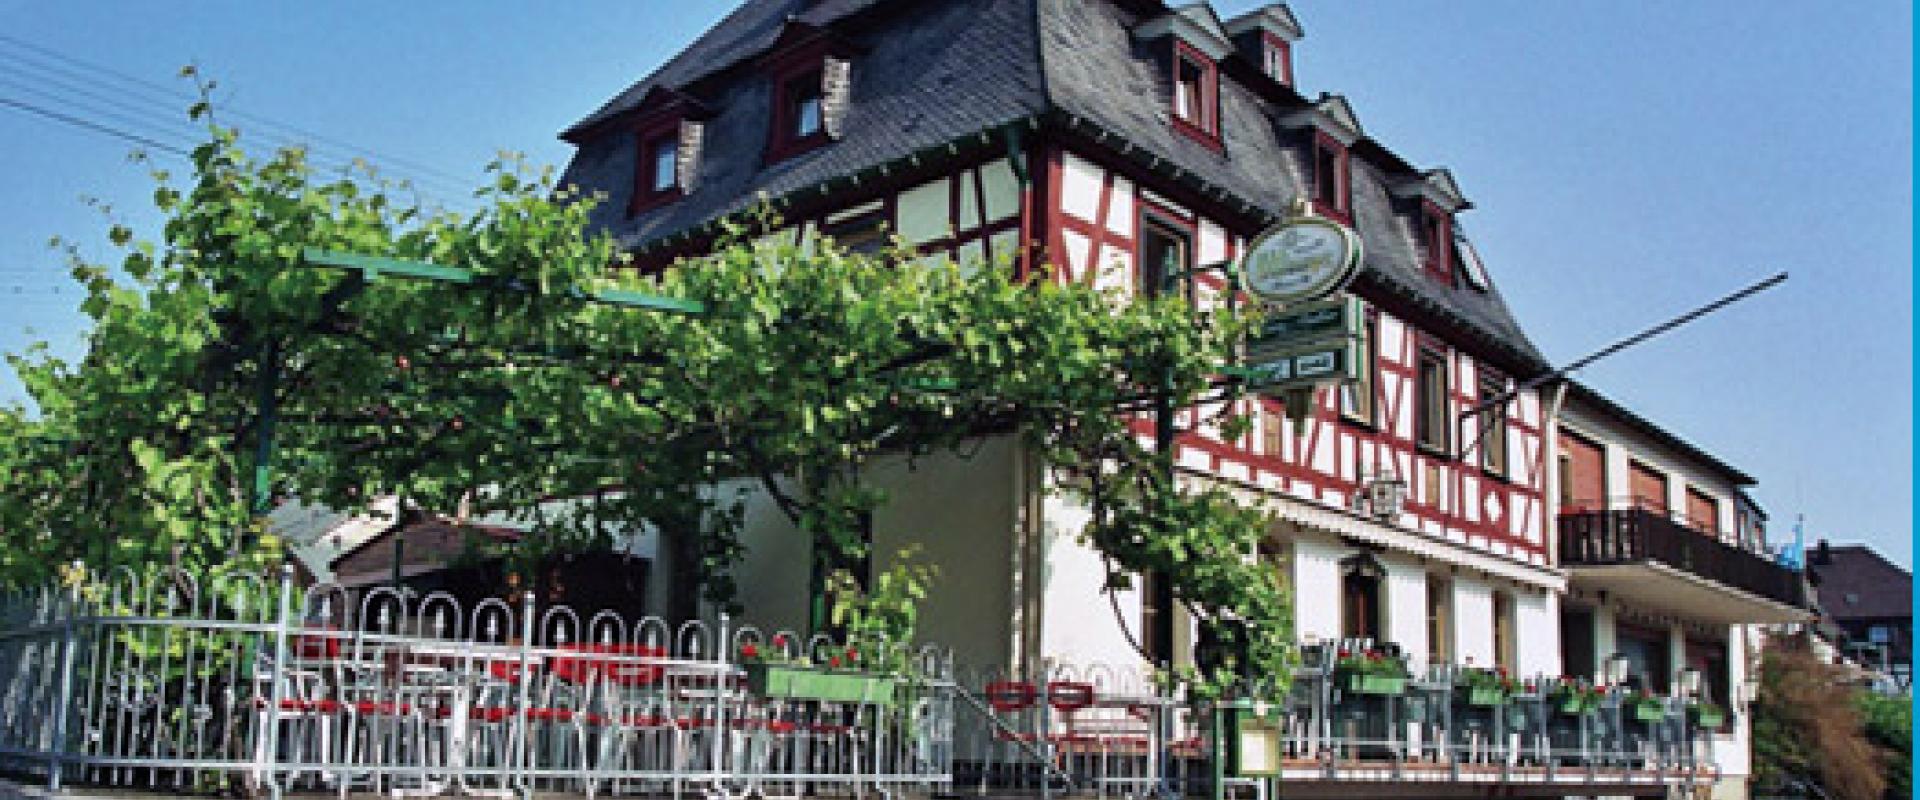 11664 Motorrad Hotel Zum Anker am romantischen Rhein.jpg